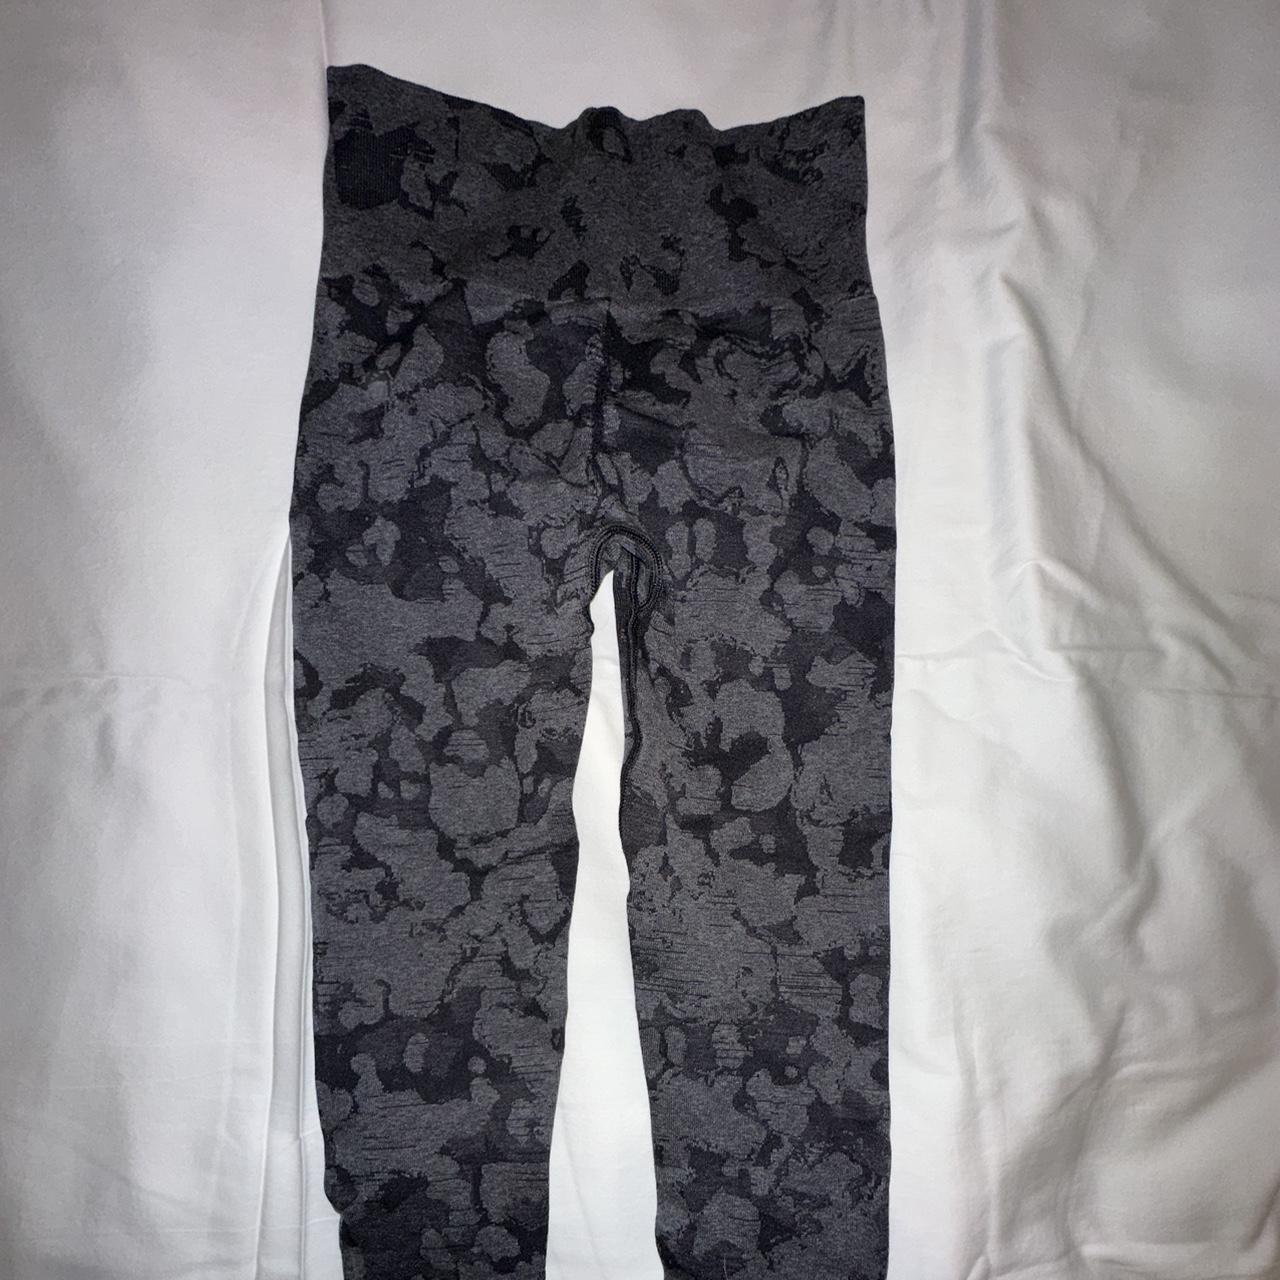 Bombshell sportswear camo scrunch leggings Perfect - Depop